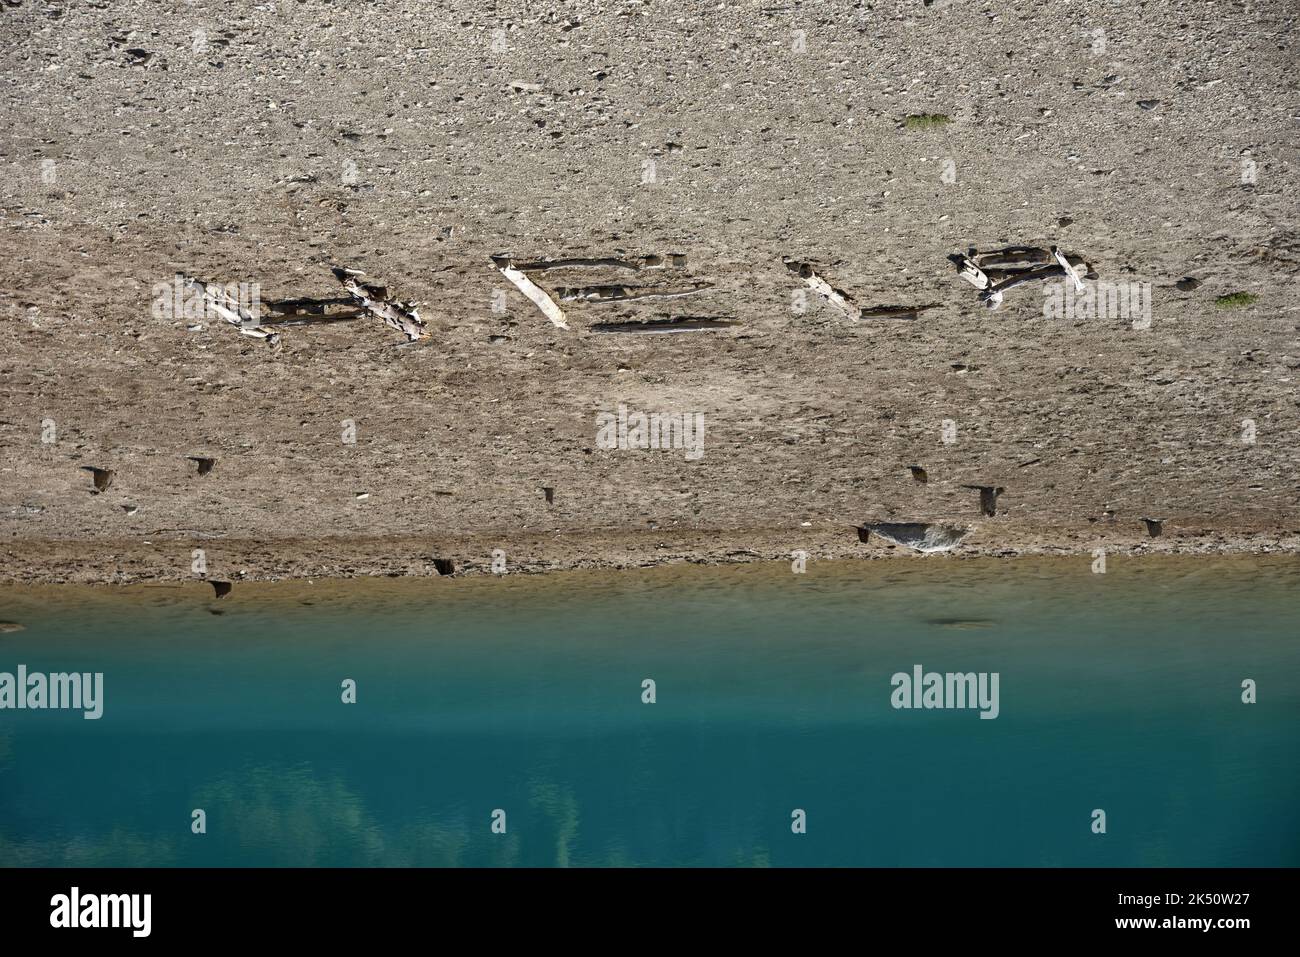 Hilfe geschrieben in Schlamm am See von Shrinking Lake aufgrund von Klimawandel, Umweltkrise, Dürre und extremem Wetter; Rette unseren Planeten. Stockfoto